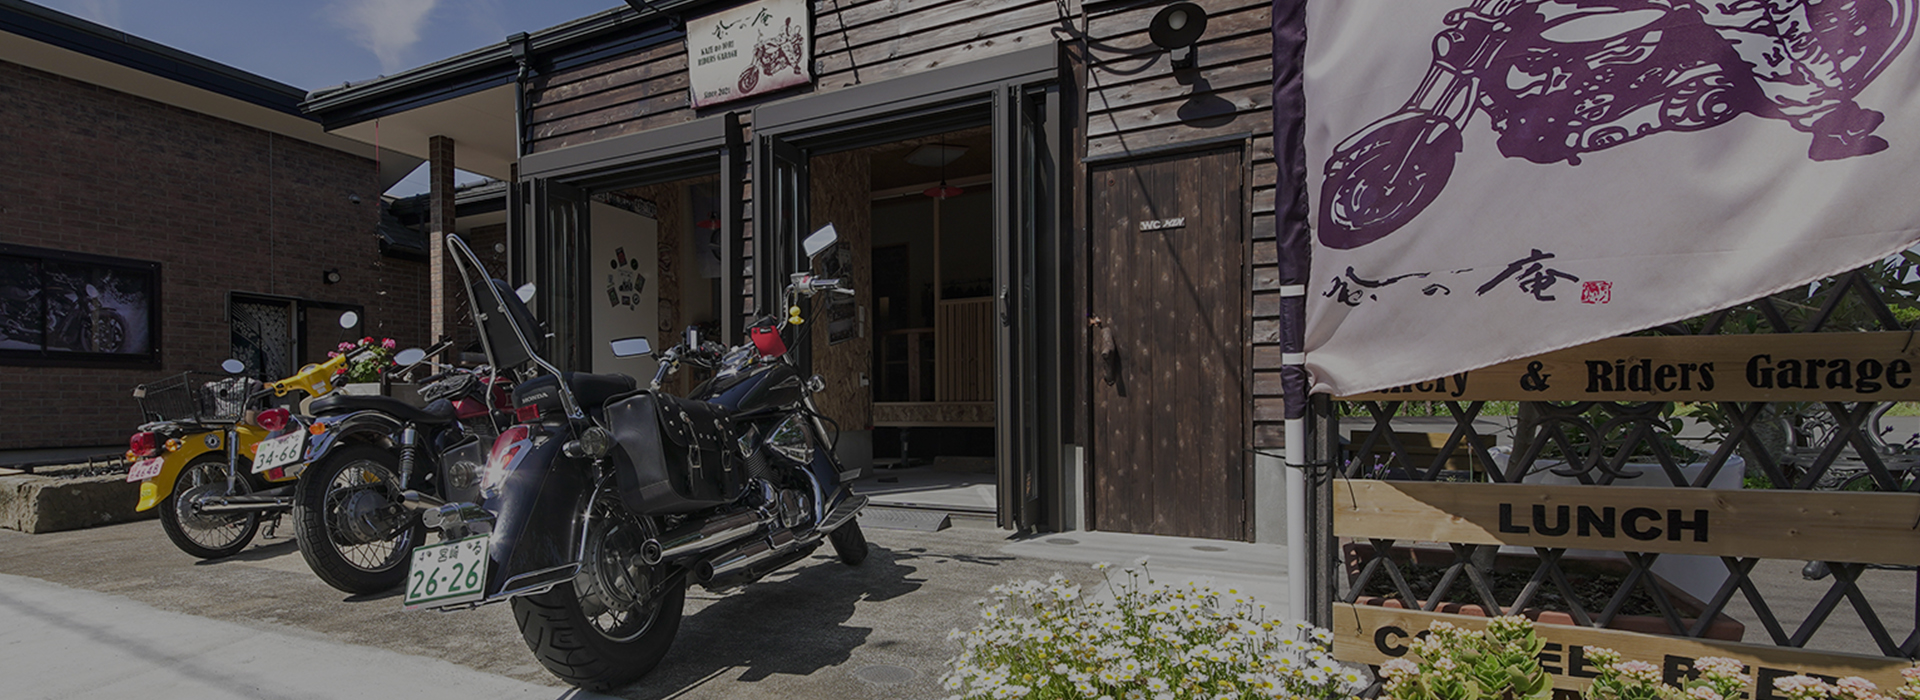 Rider’s Garageの画像